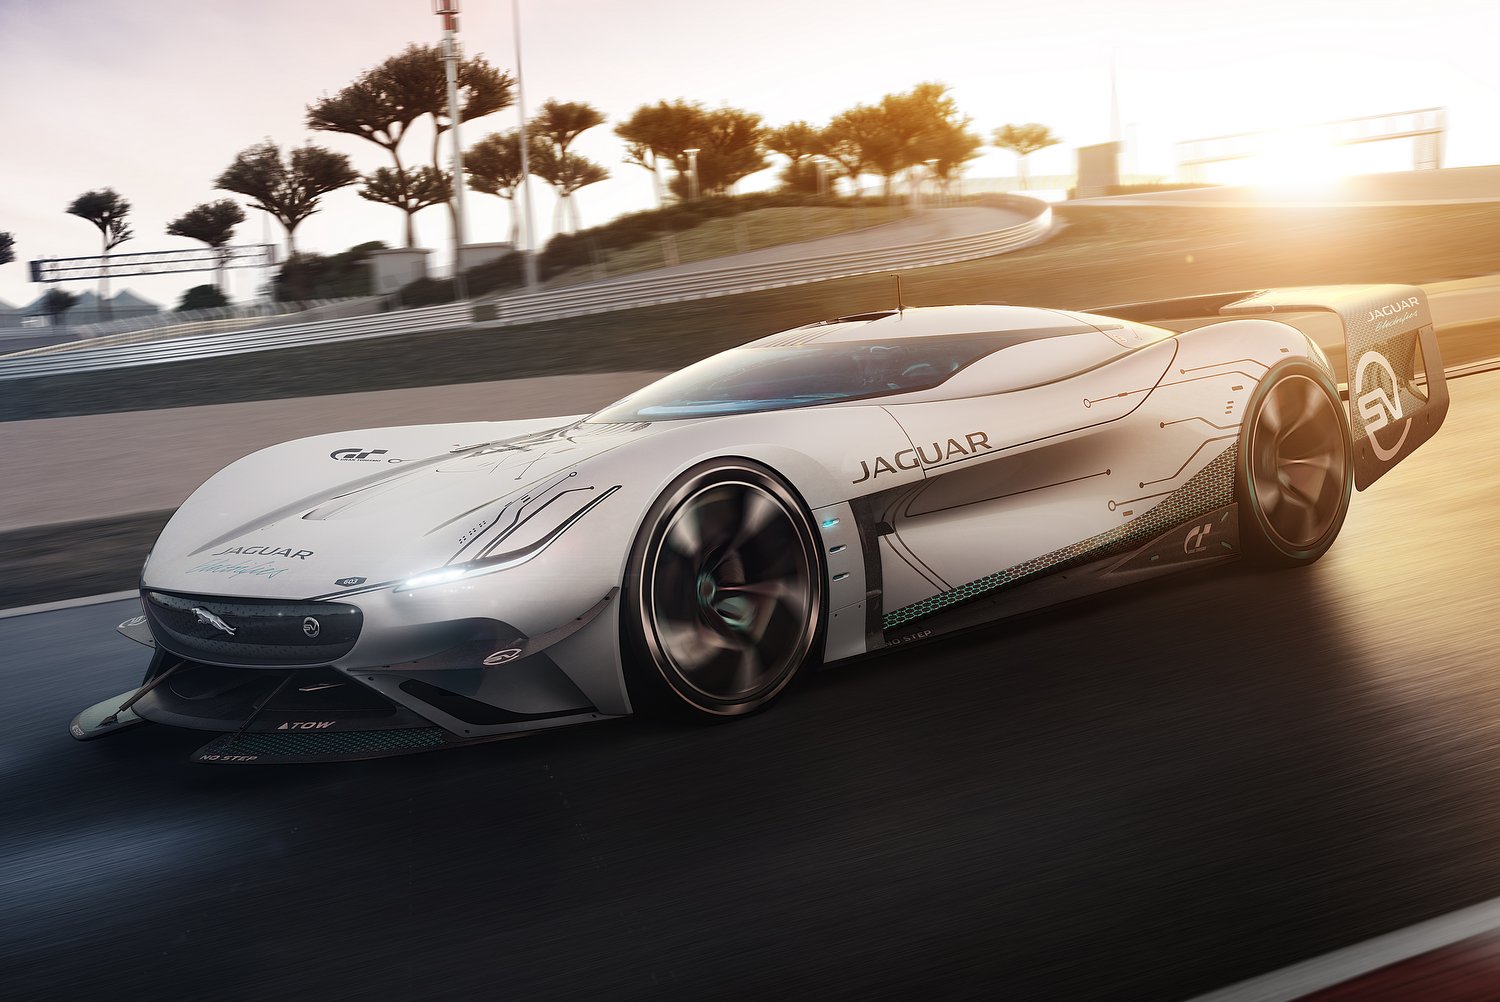 Elképesztő virtuális versenyautót épített a Jaguar 12